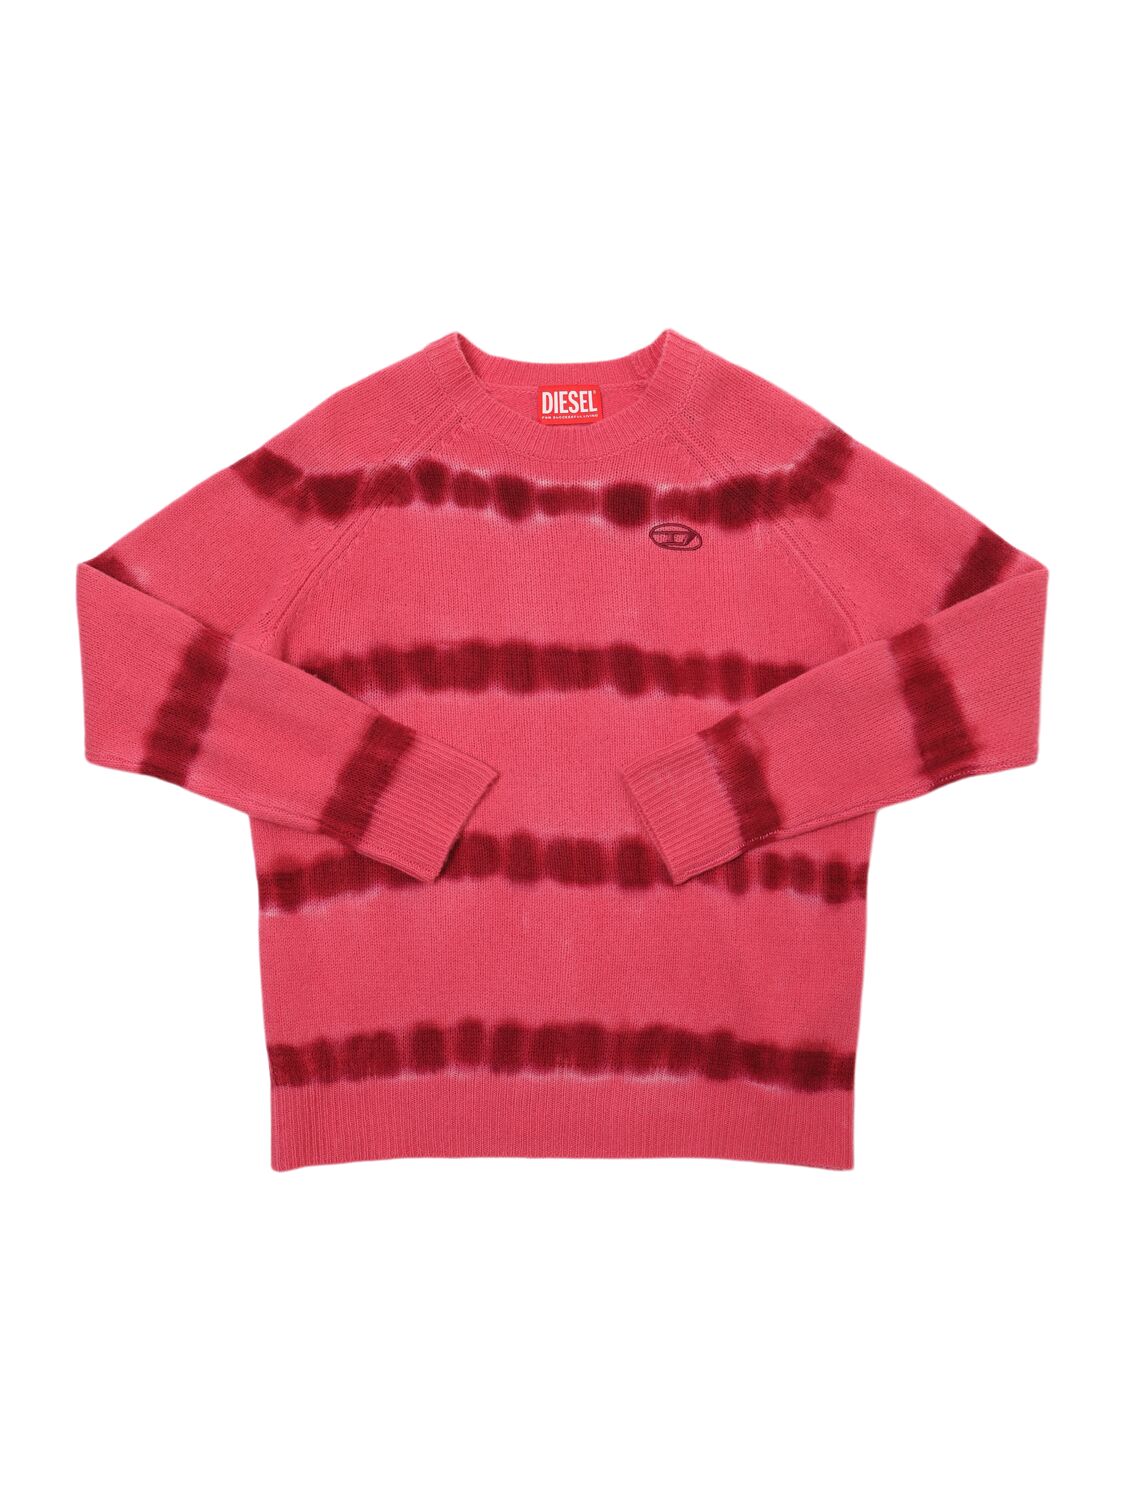 Diesel Kids' Wool Knit Sweater In Pink